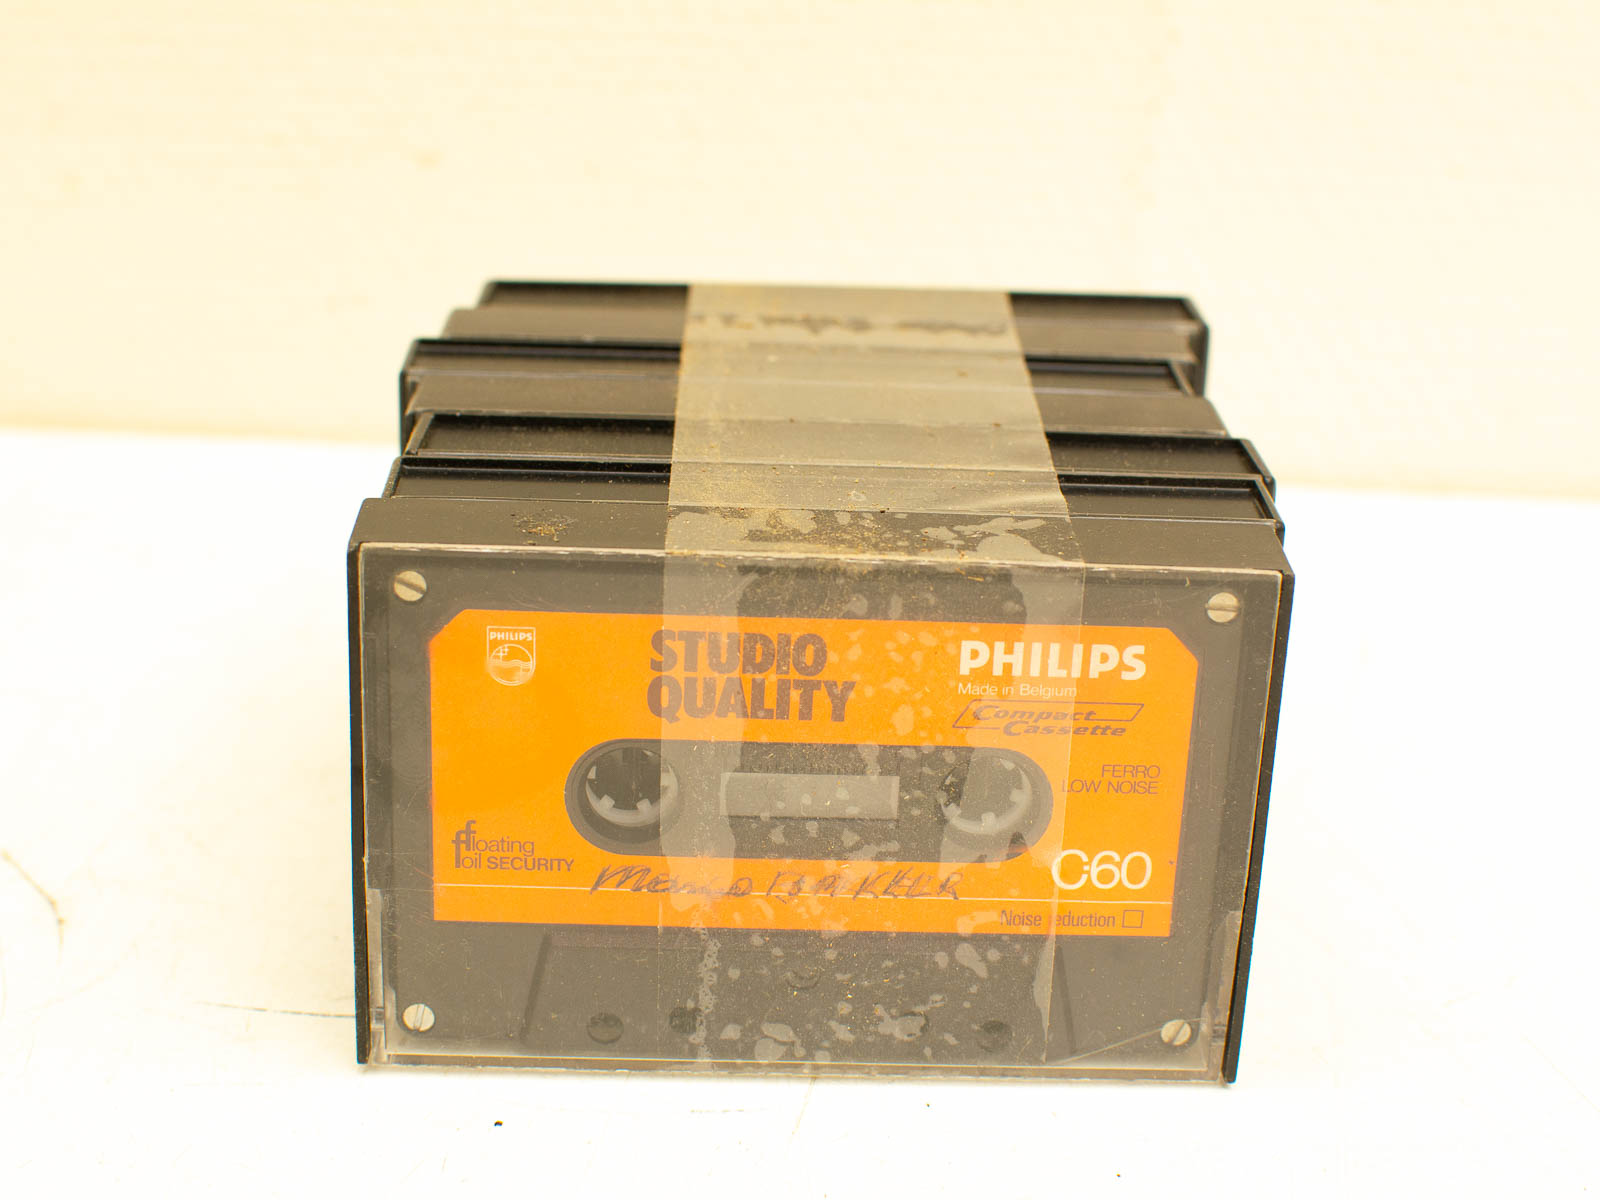 7 phillips cassettebandjes  31933